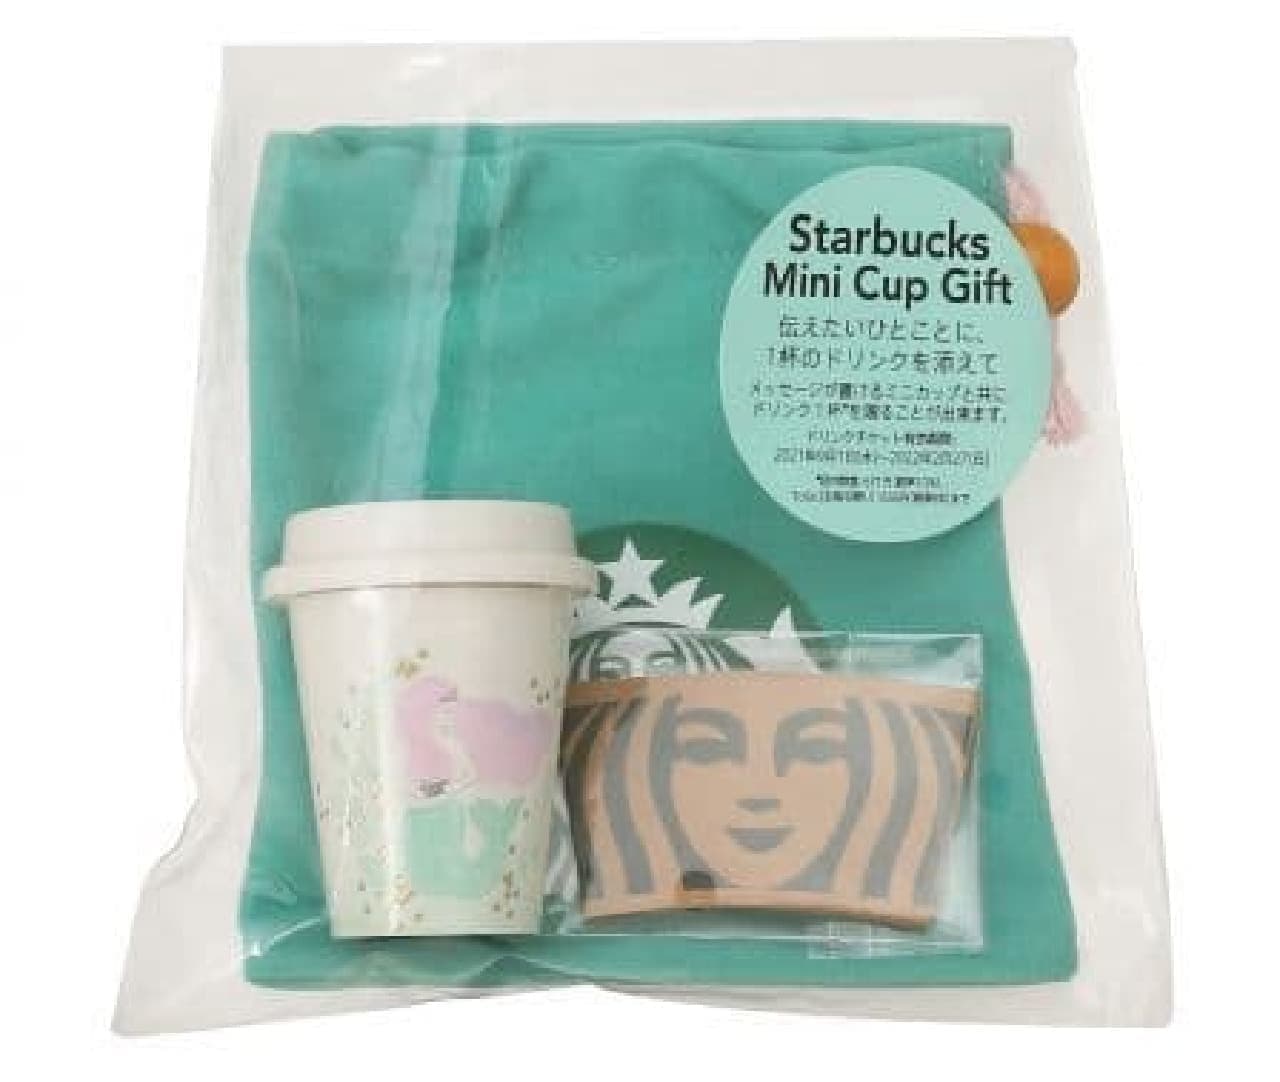 Starbucks "Anniversary 2021 Starbucks Mini Cup Gift"